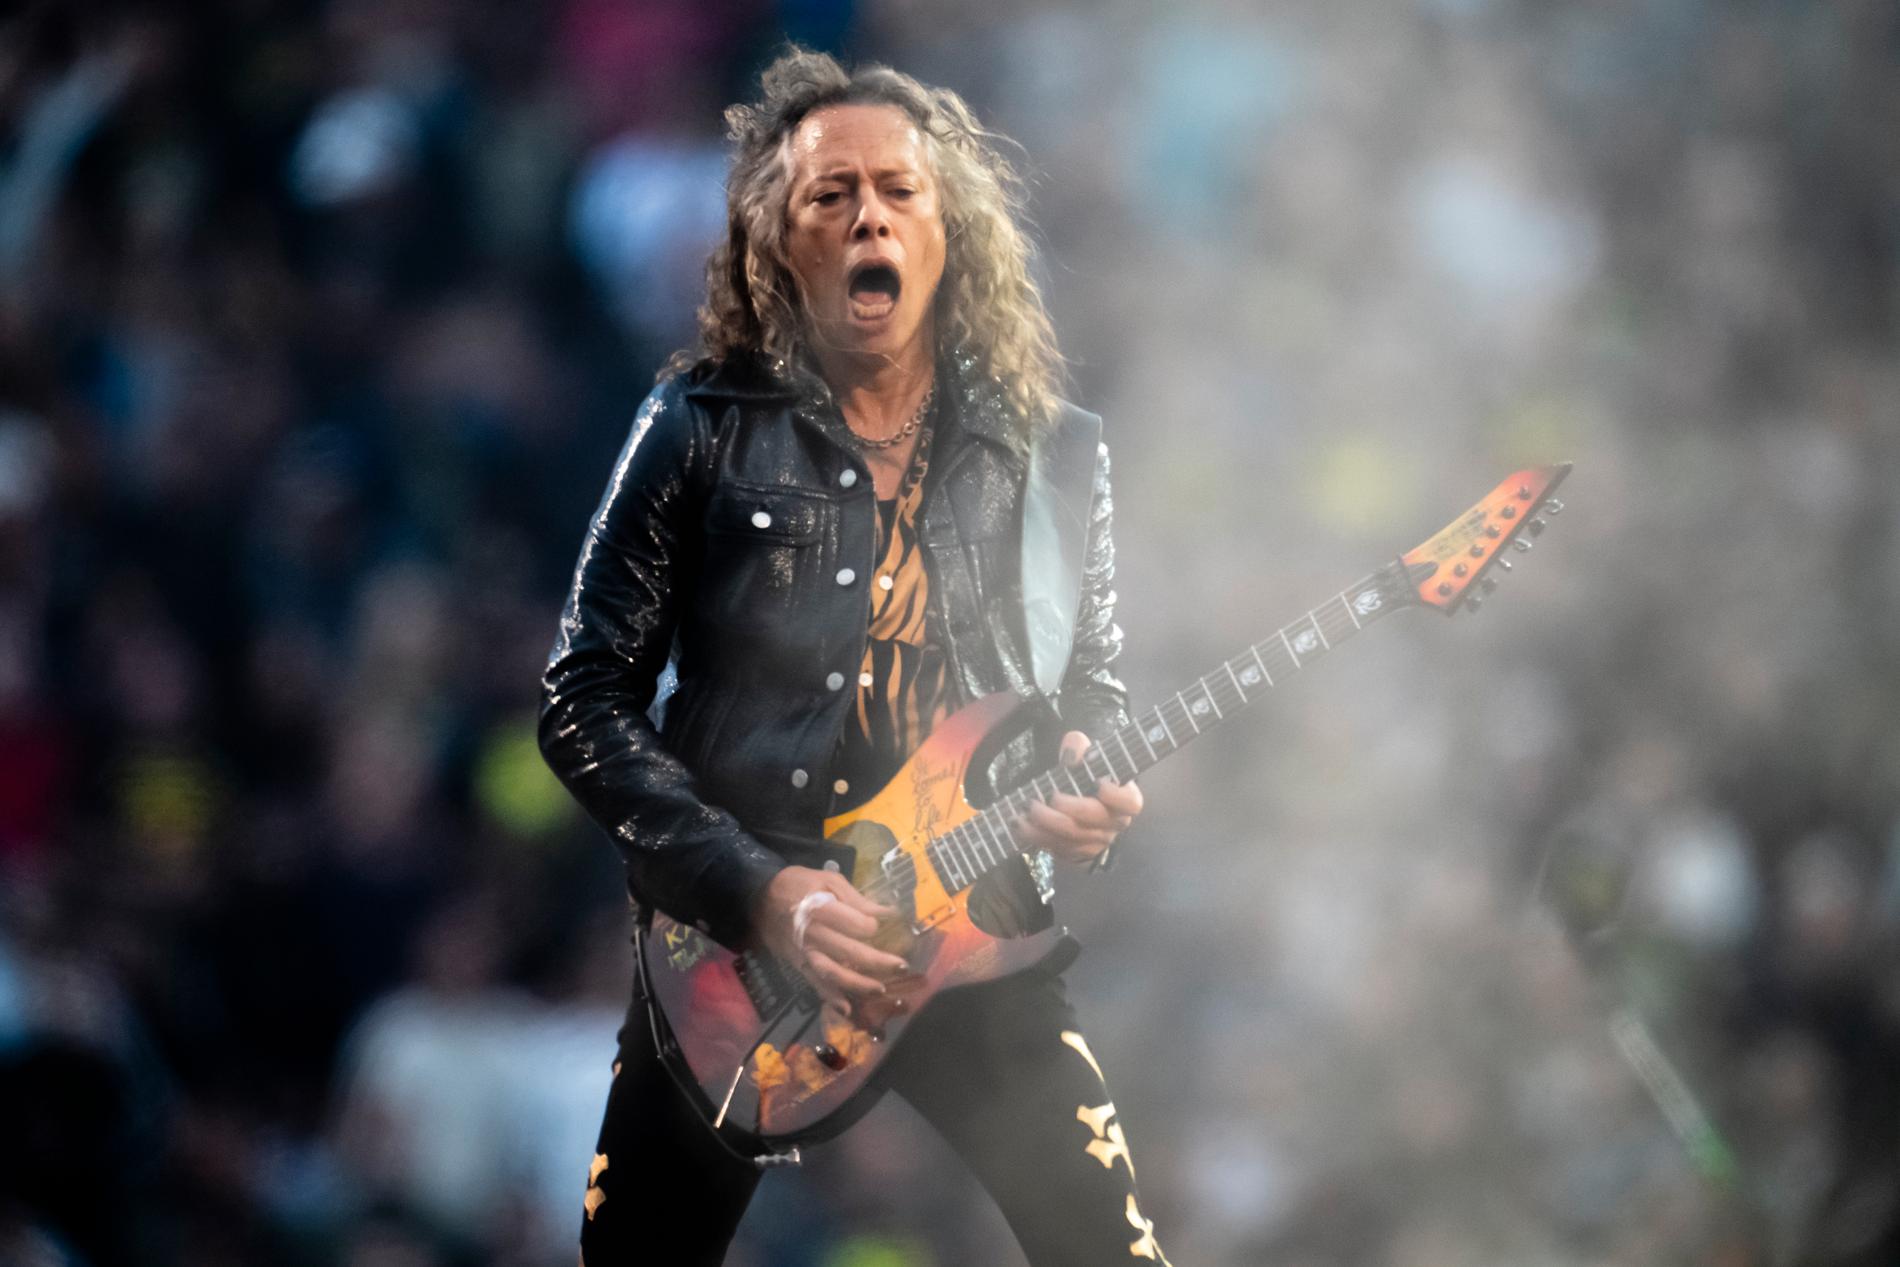 I april i år var det 40 år sedan Kirk Hammett gjorde sin första spelning med Metallica. Det har blivit några till sedan dess.